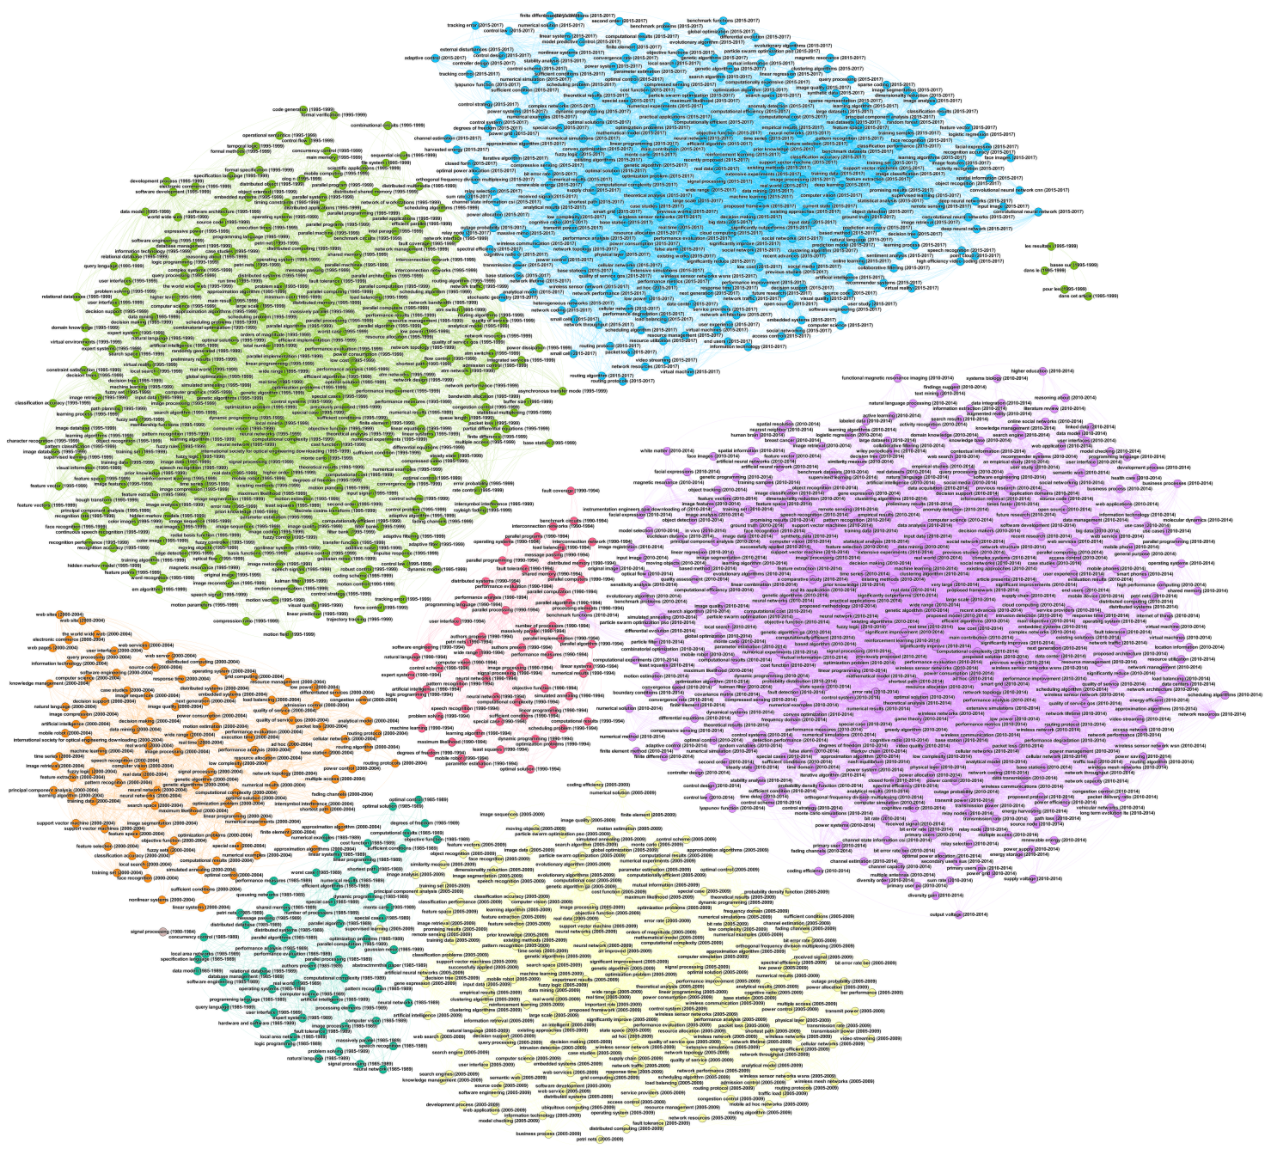 Yearly network visualization